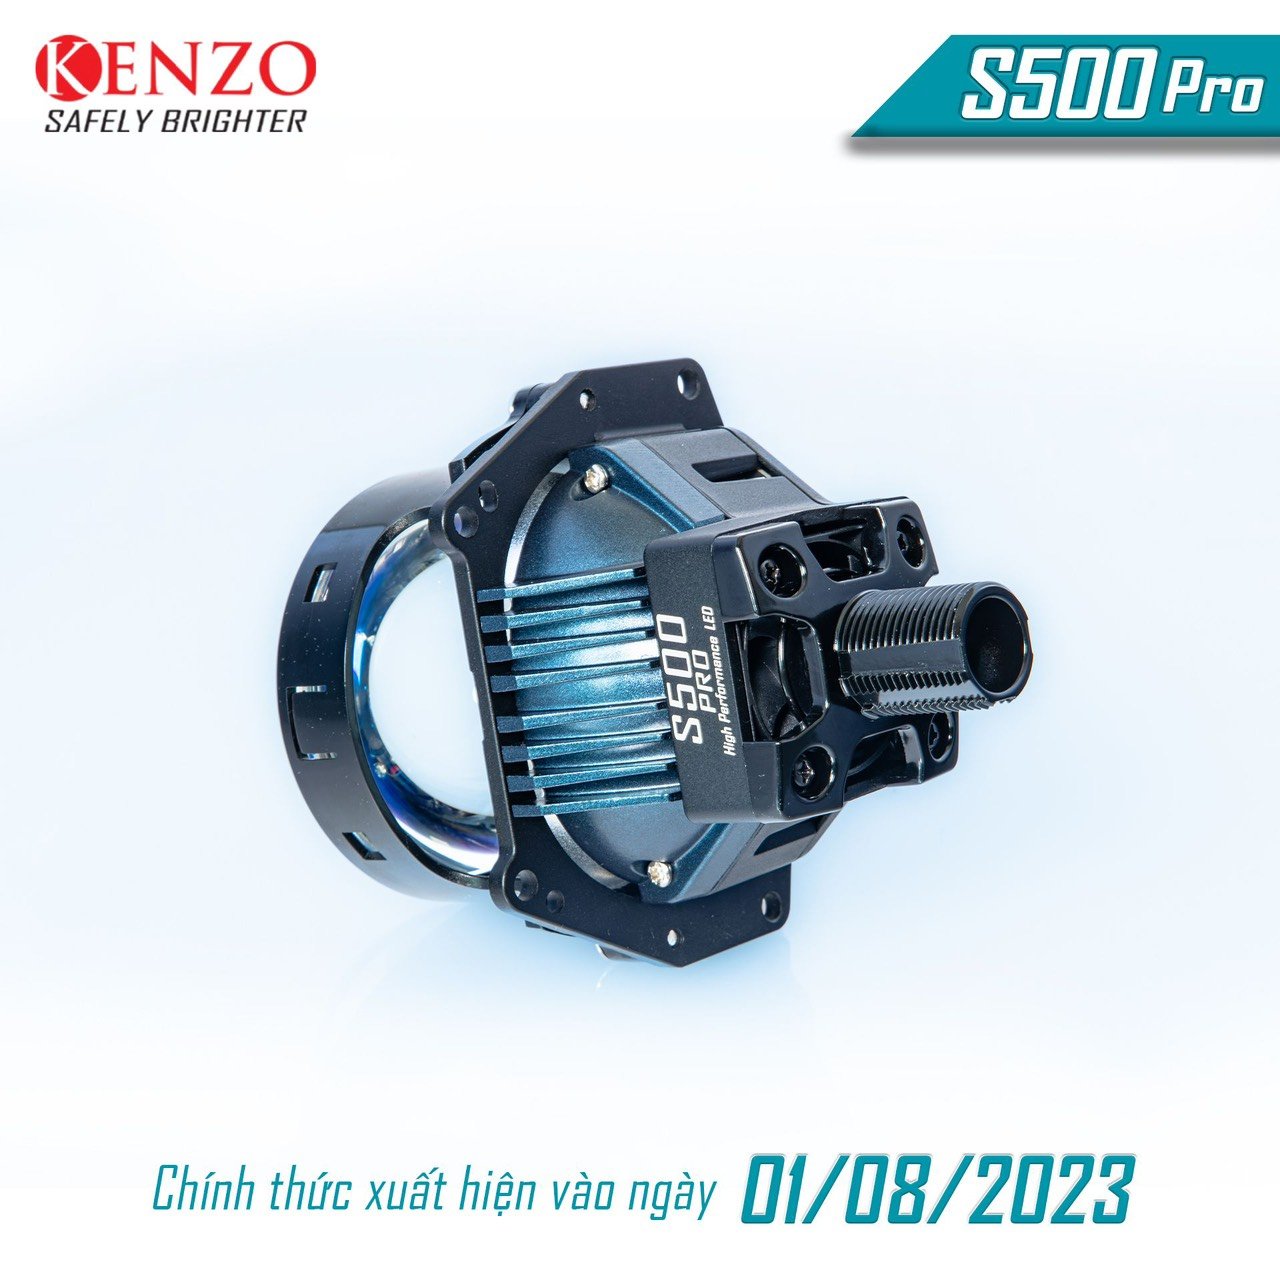 kenzo s500 pro